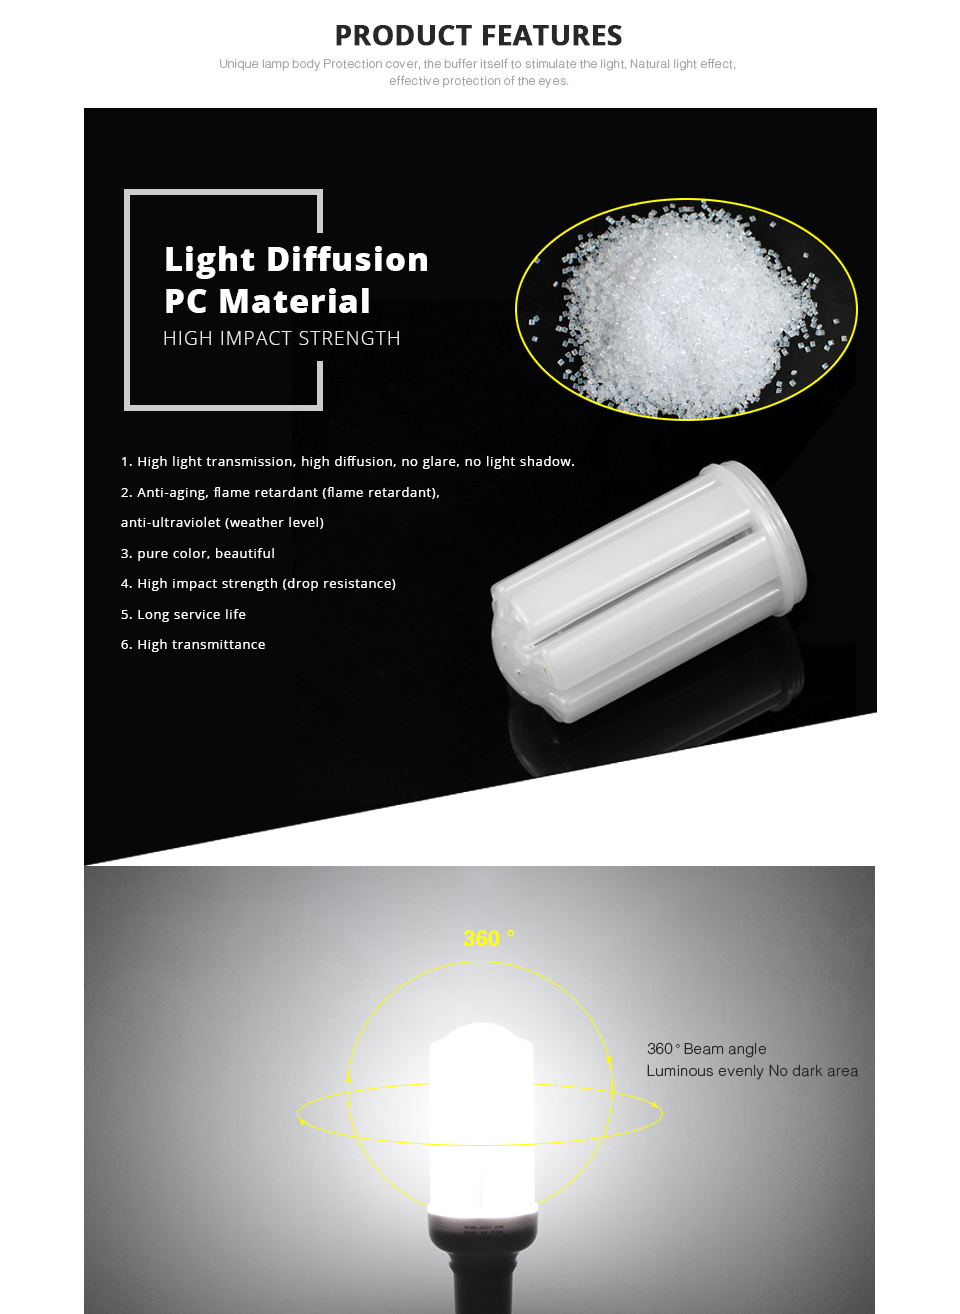 PIR Infrared Motion Sensor LED lamp light Switch Holder E27 220V LED light Kit Stair PIR lampholder lighting